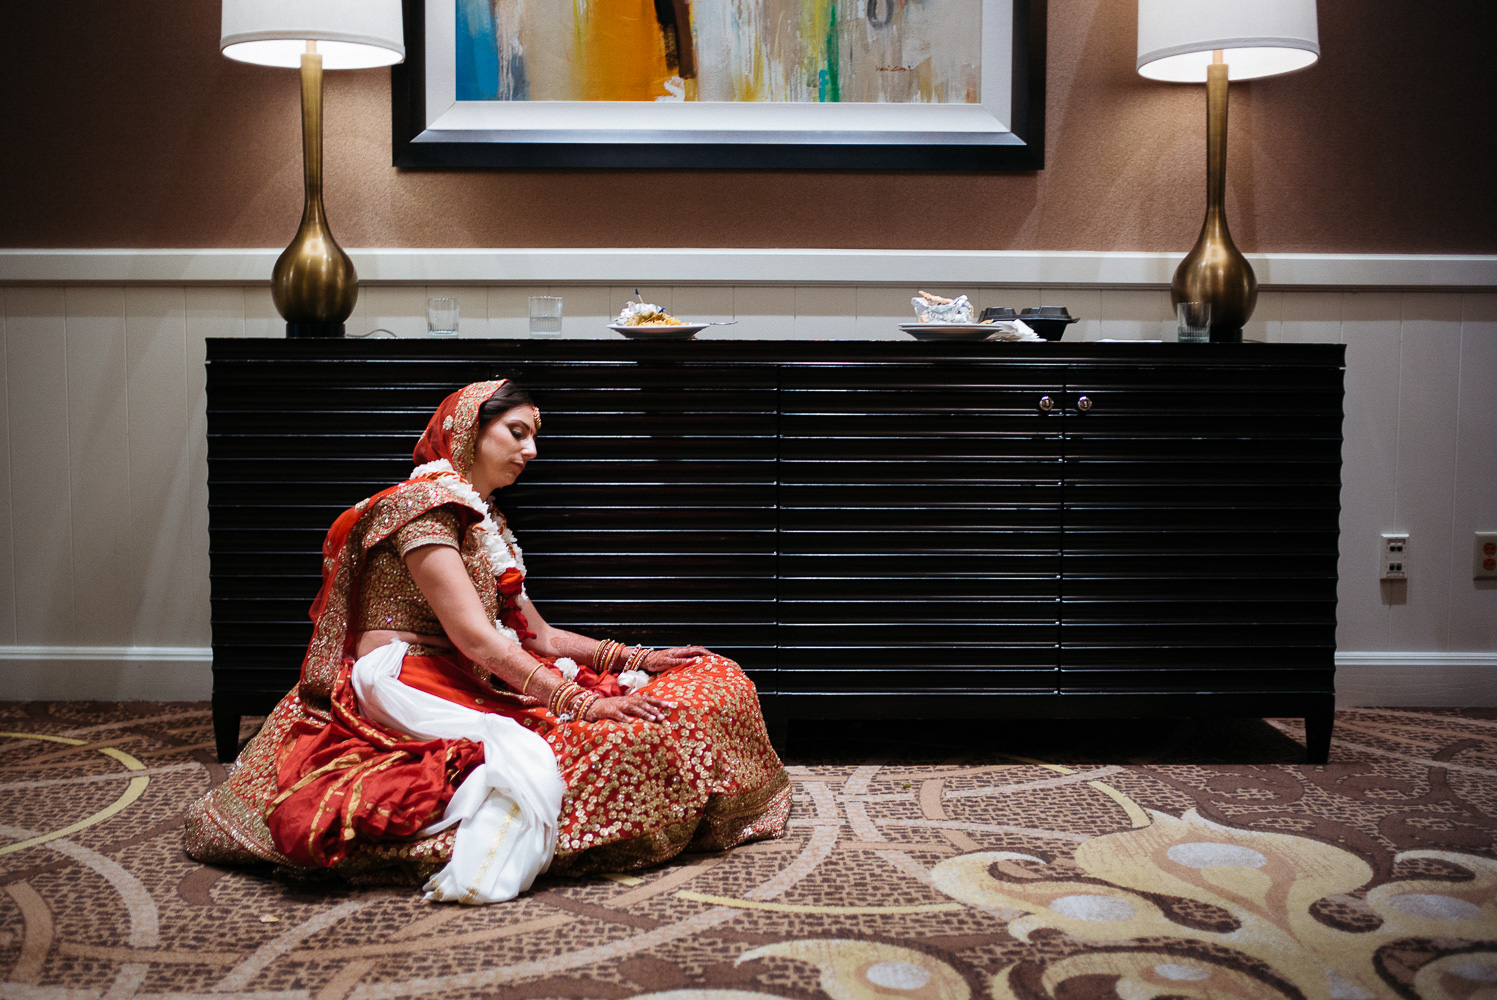 A resting bride at hotel Hindu Jewish fusion wedding Sugar Land Marriott Hotel Texas-053